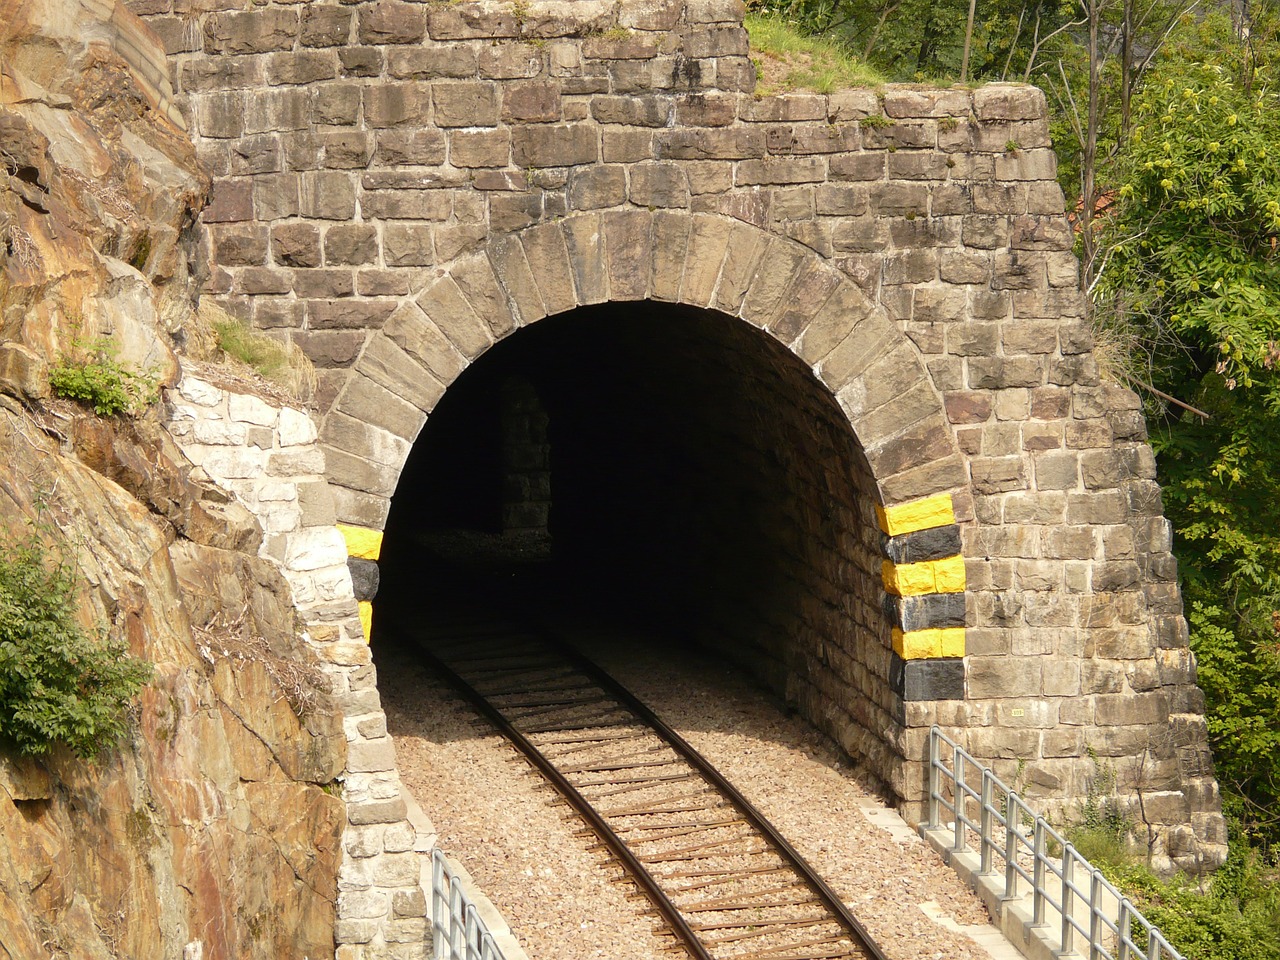 eisenbahtunnel tunnel railway free photo